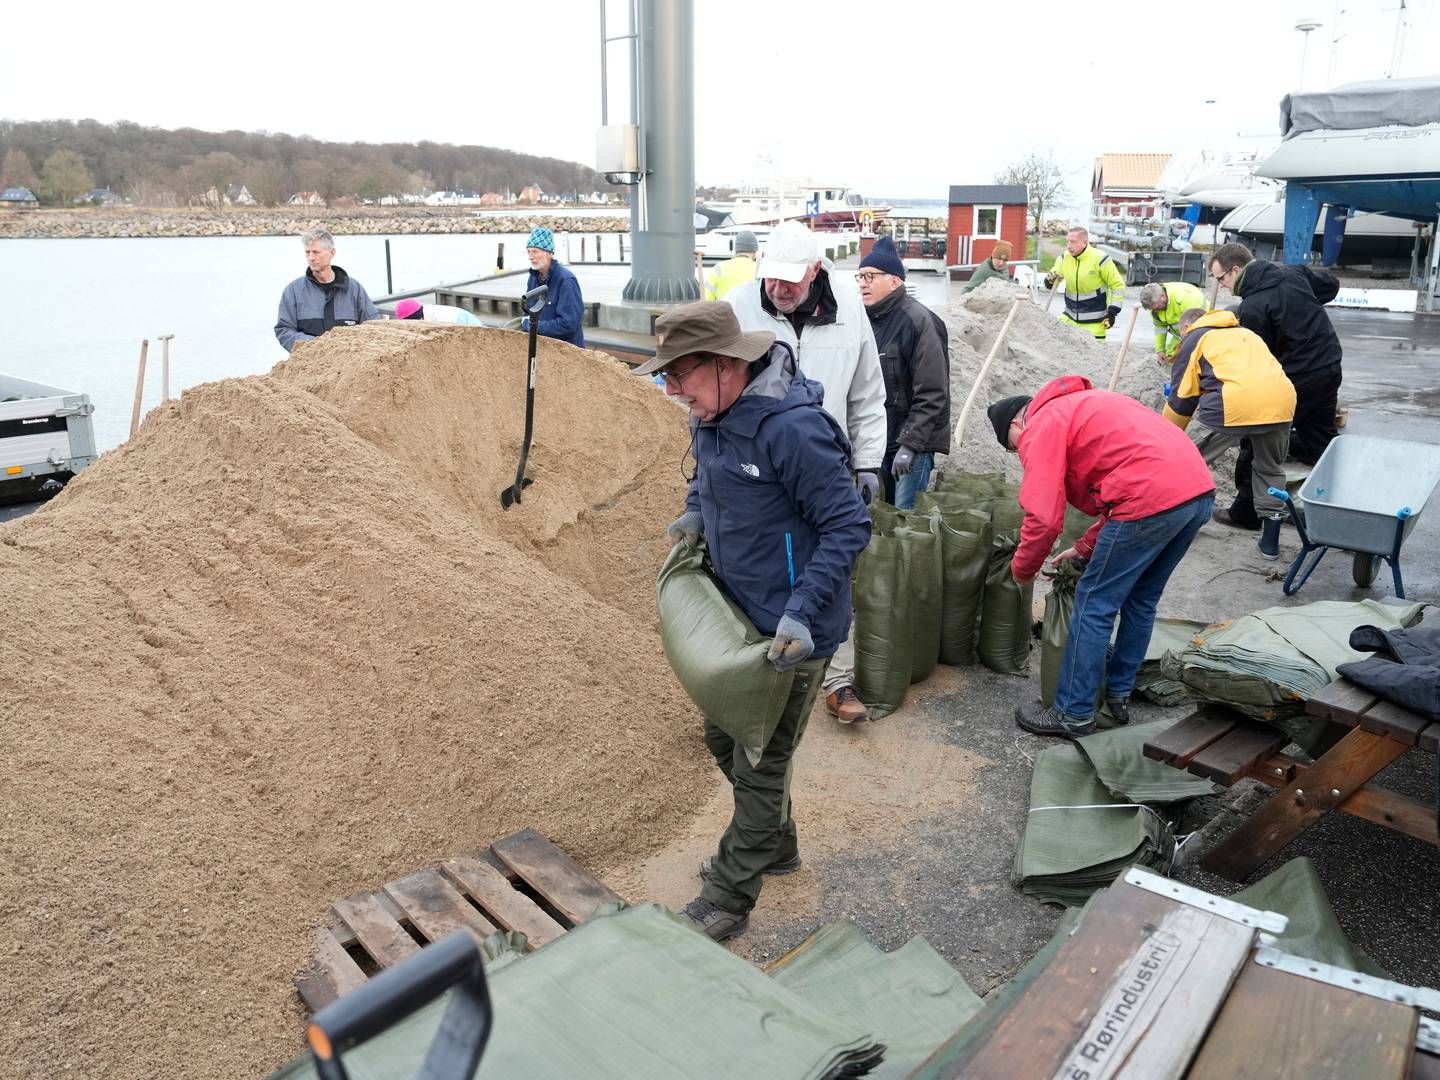 Stormen, der har fået navnet Pia, har kurs mod Danmark. Her ses borgere i Nivå forberede sig med sandsække til den forventede forhøjede vandstand. | Foto: Keld Navntoft/Ritzau Scanpix